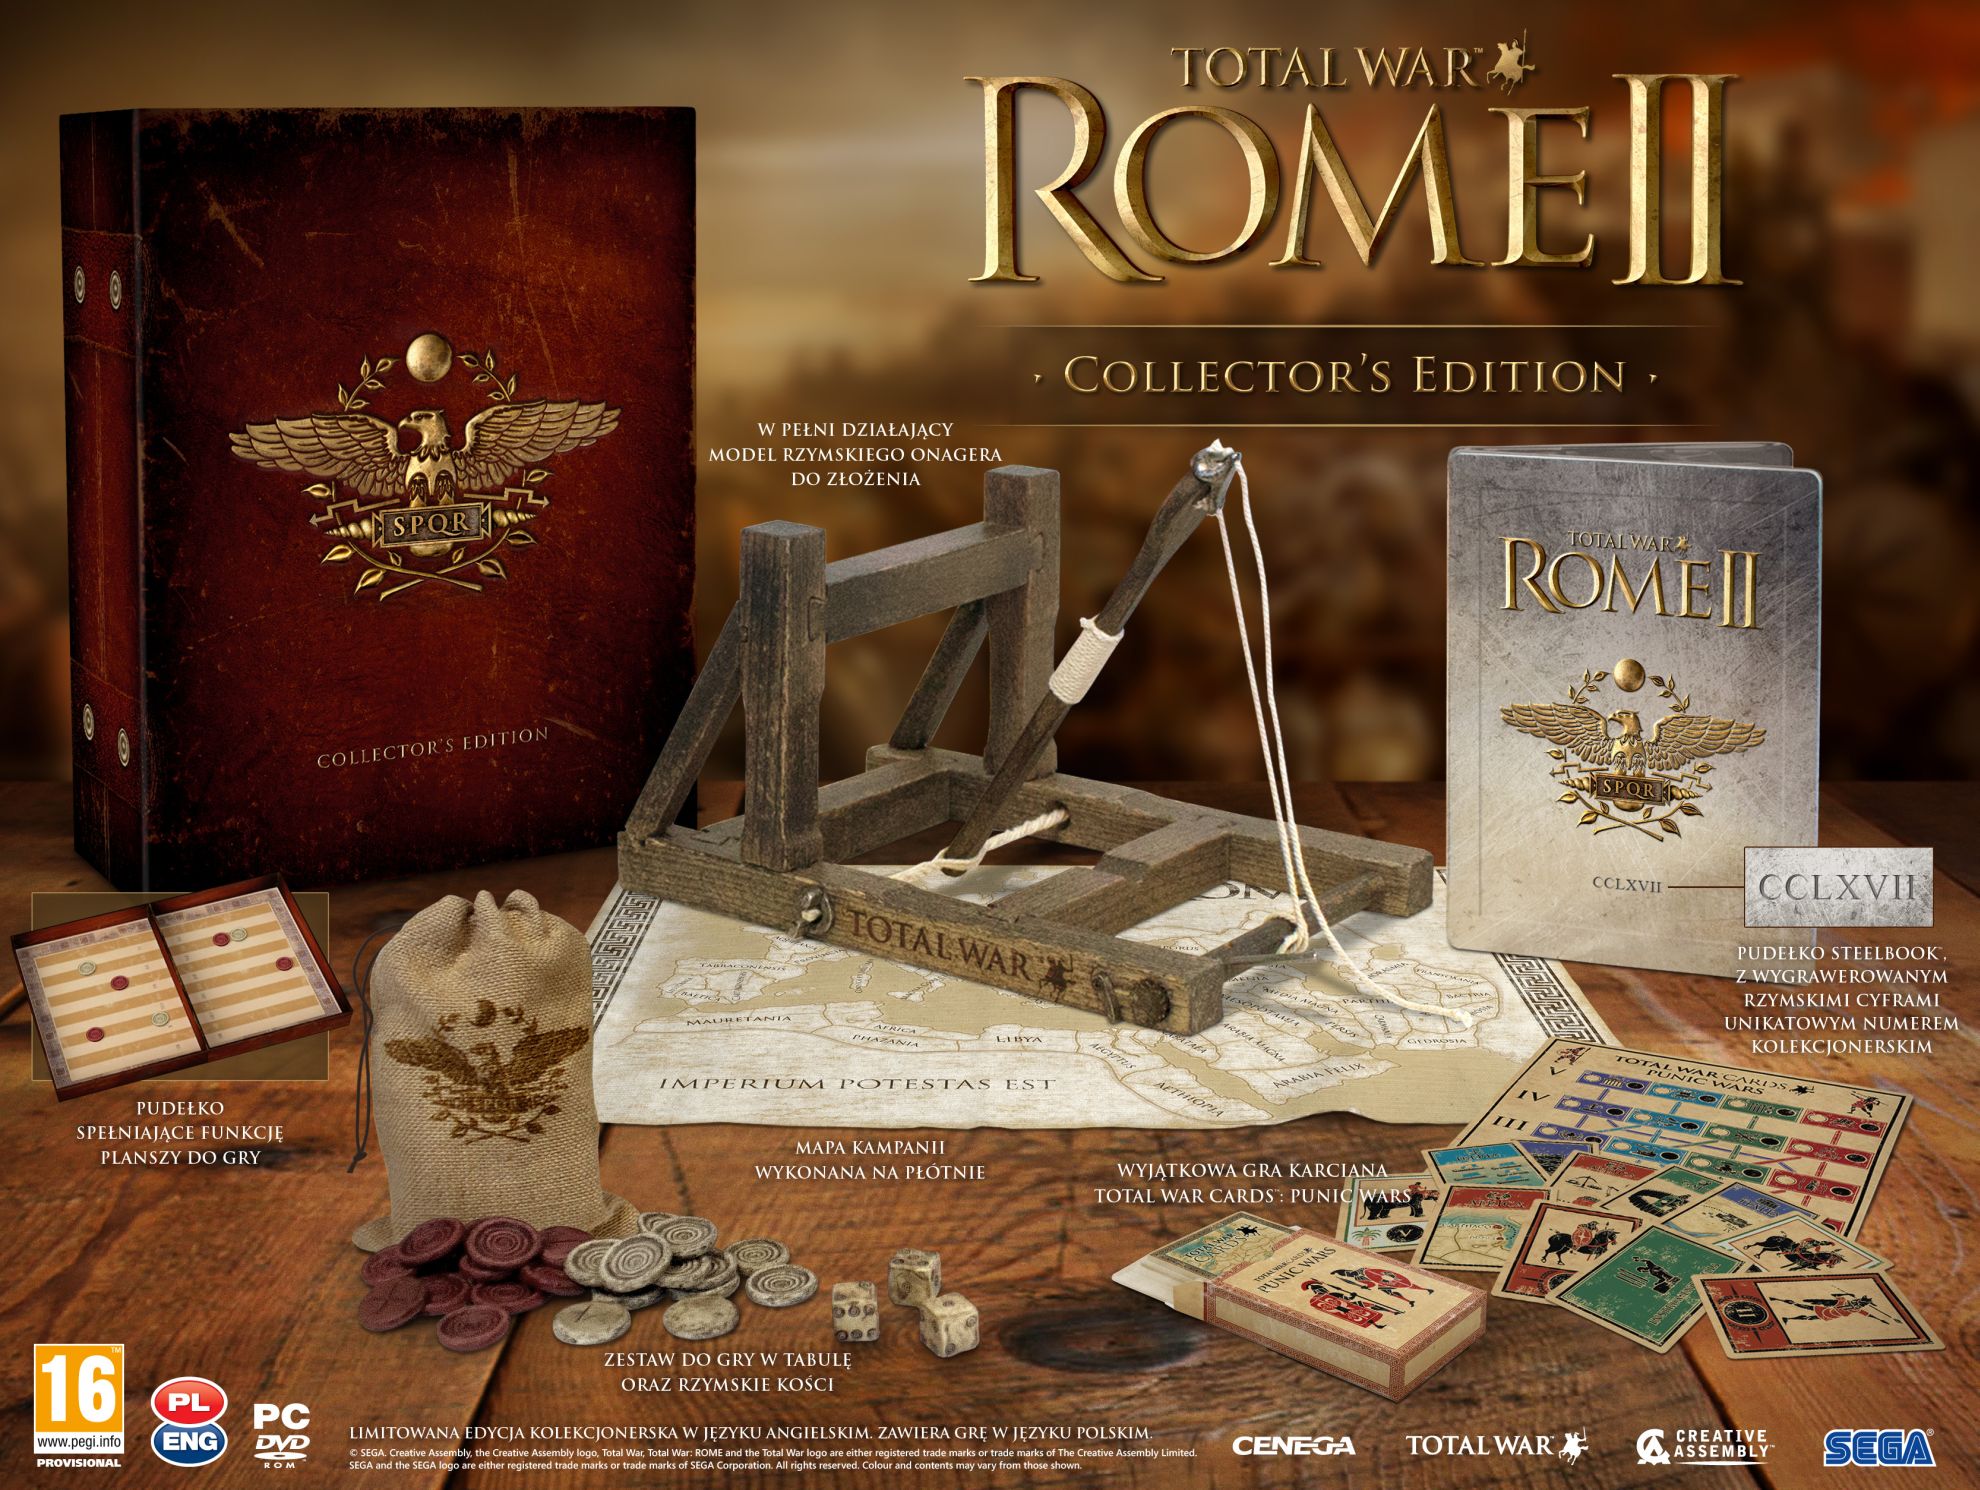 Ruszyły zamówienia przedpremierowe na Total War: Rome 2 - Edycja Kolekcjonerska w sklepie gram.pl. Darmowe DLC jako bonus!